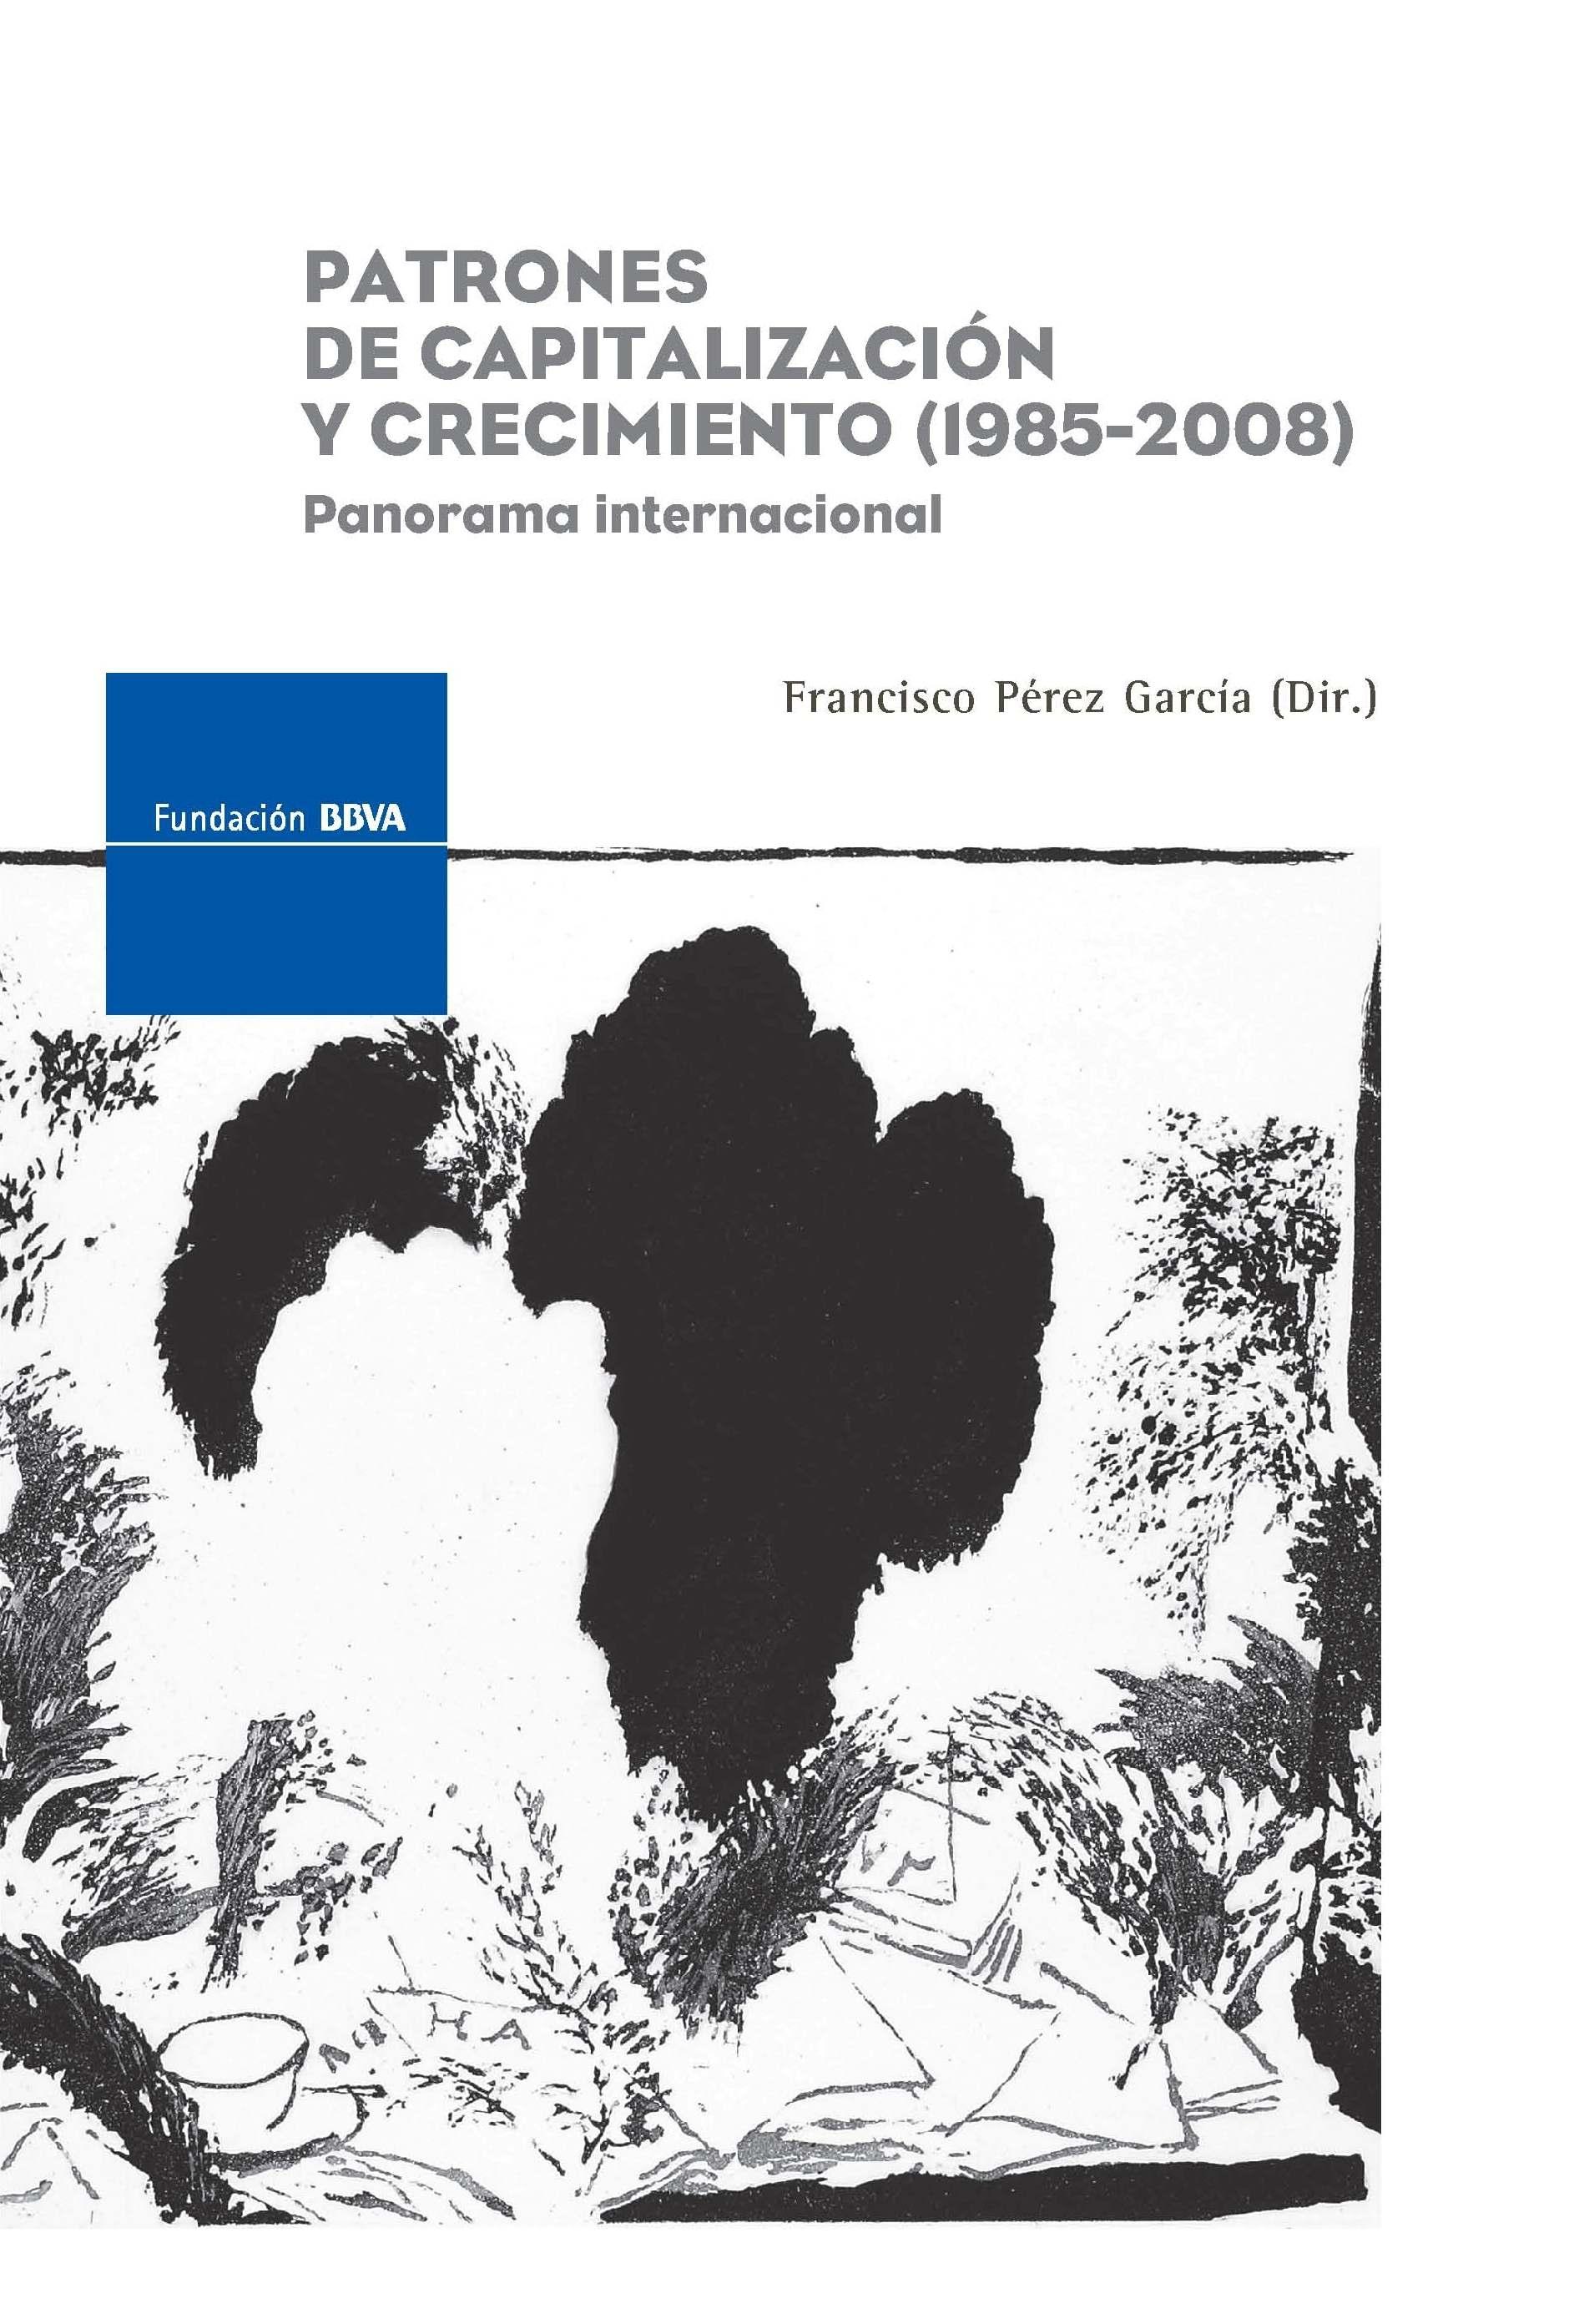 Patrones de capitalización y crecimiento (1985-2008) "Panorama Internacional"